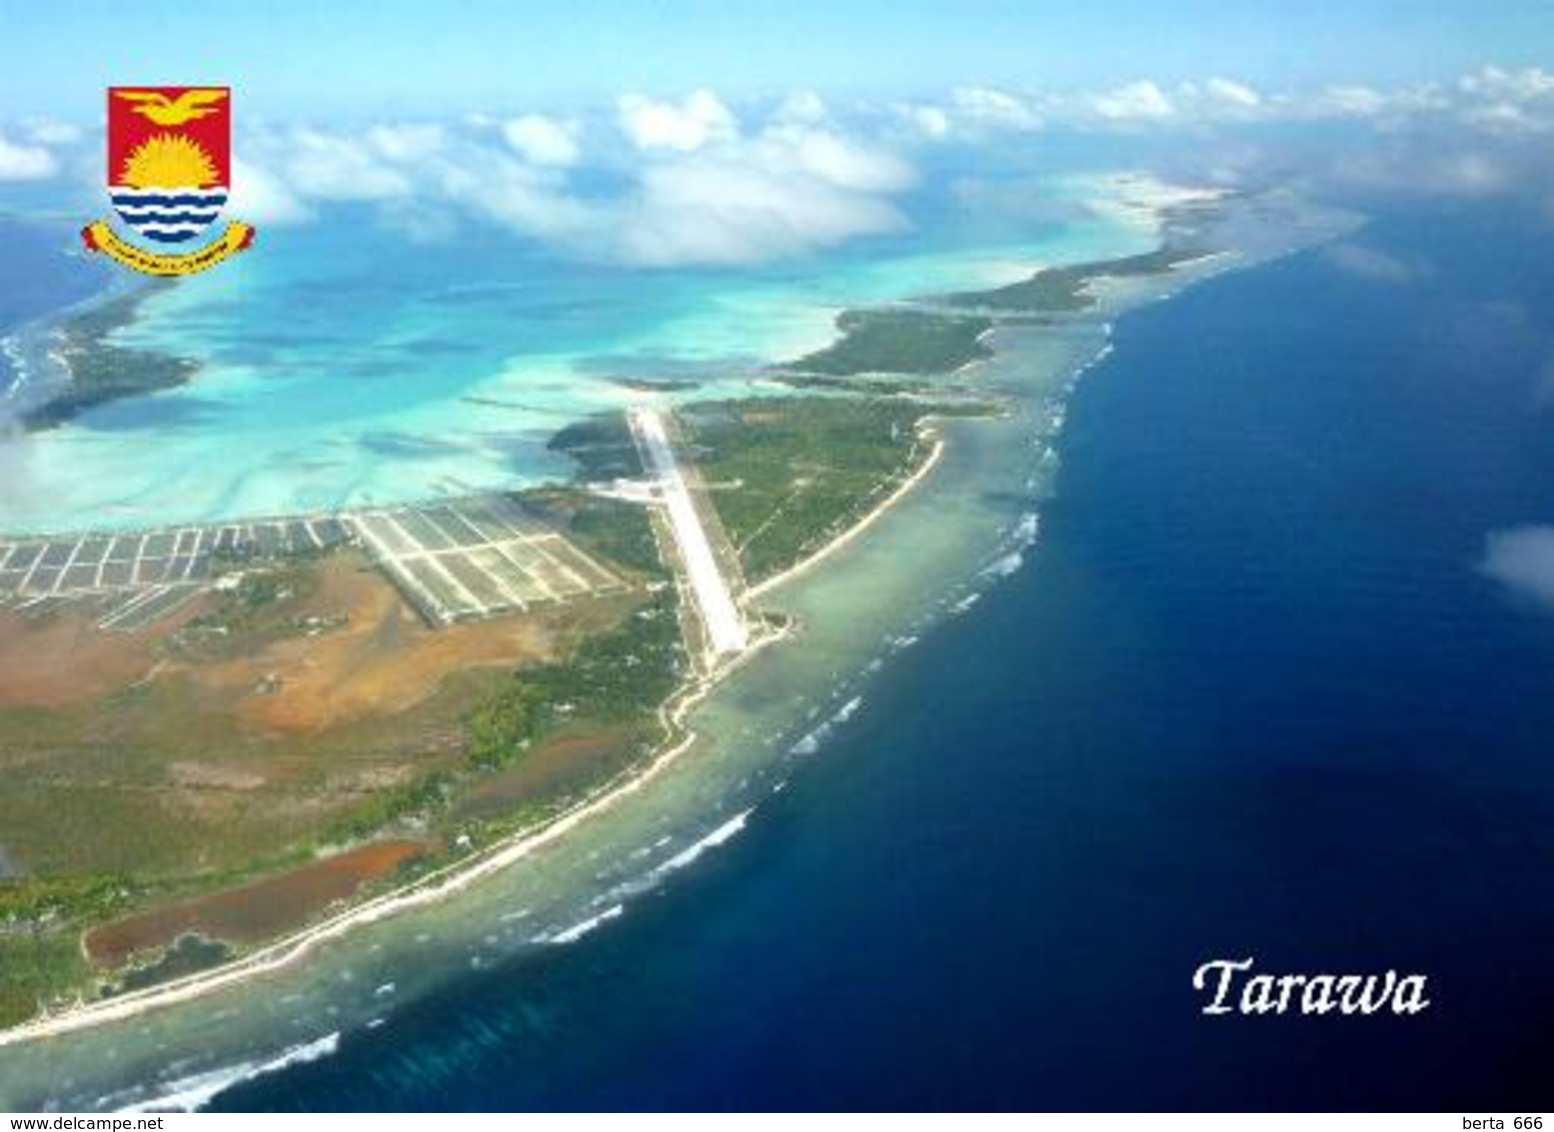 AK Kiribati Tarawa Bonriki Airport Aerial View New Postcard - Kiribati